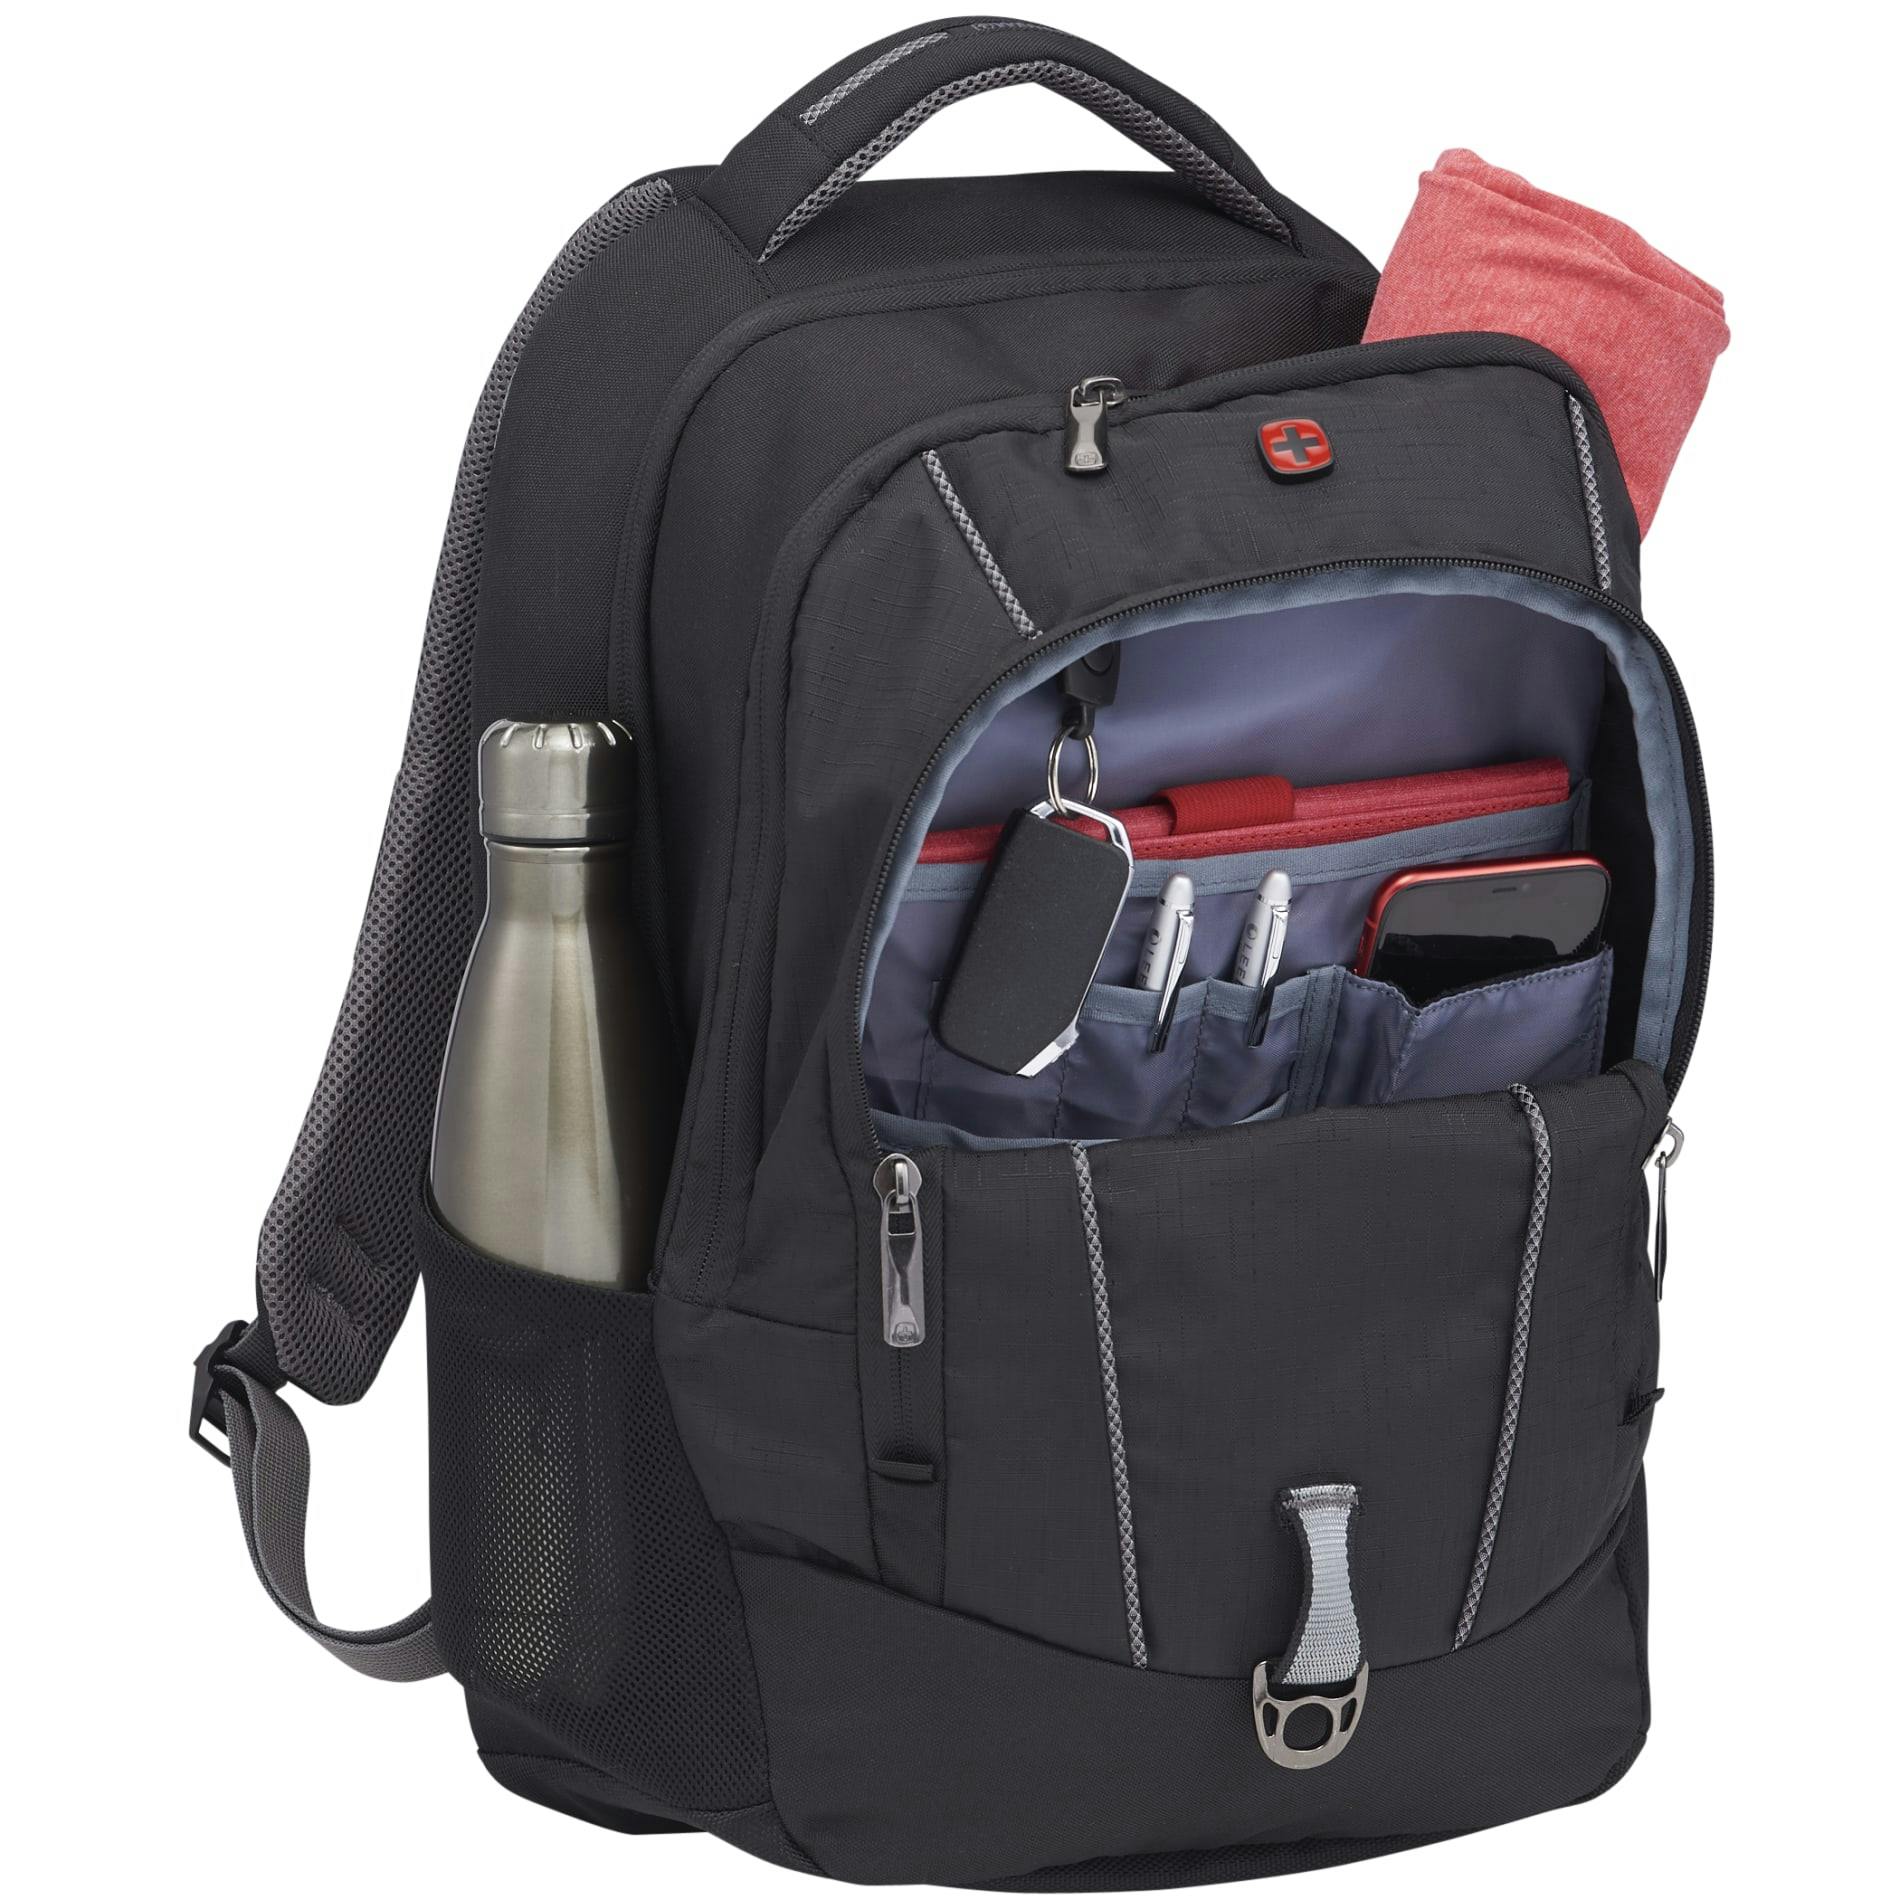 Wenger Pro II 17" Computer Backpack - additional Image 2